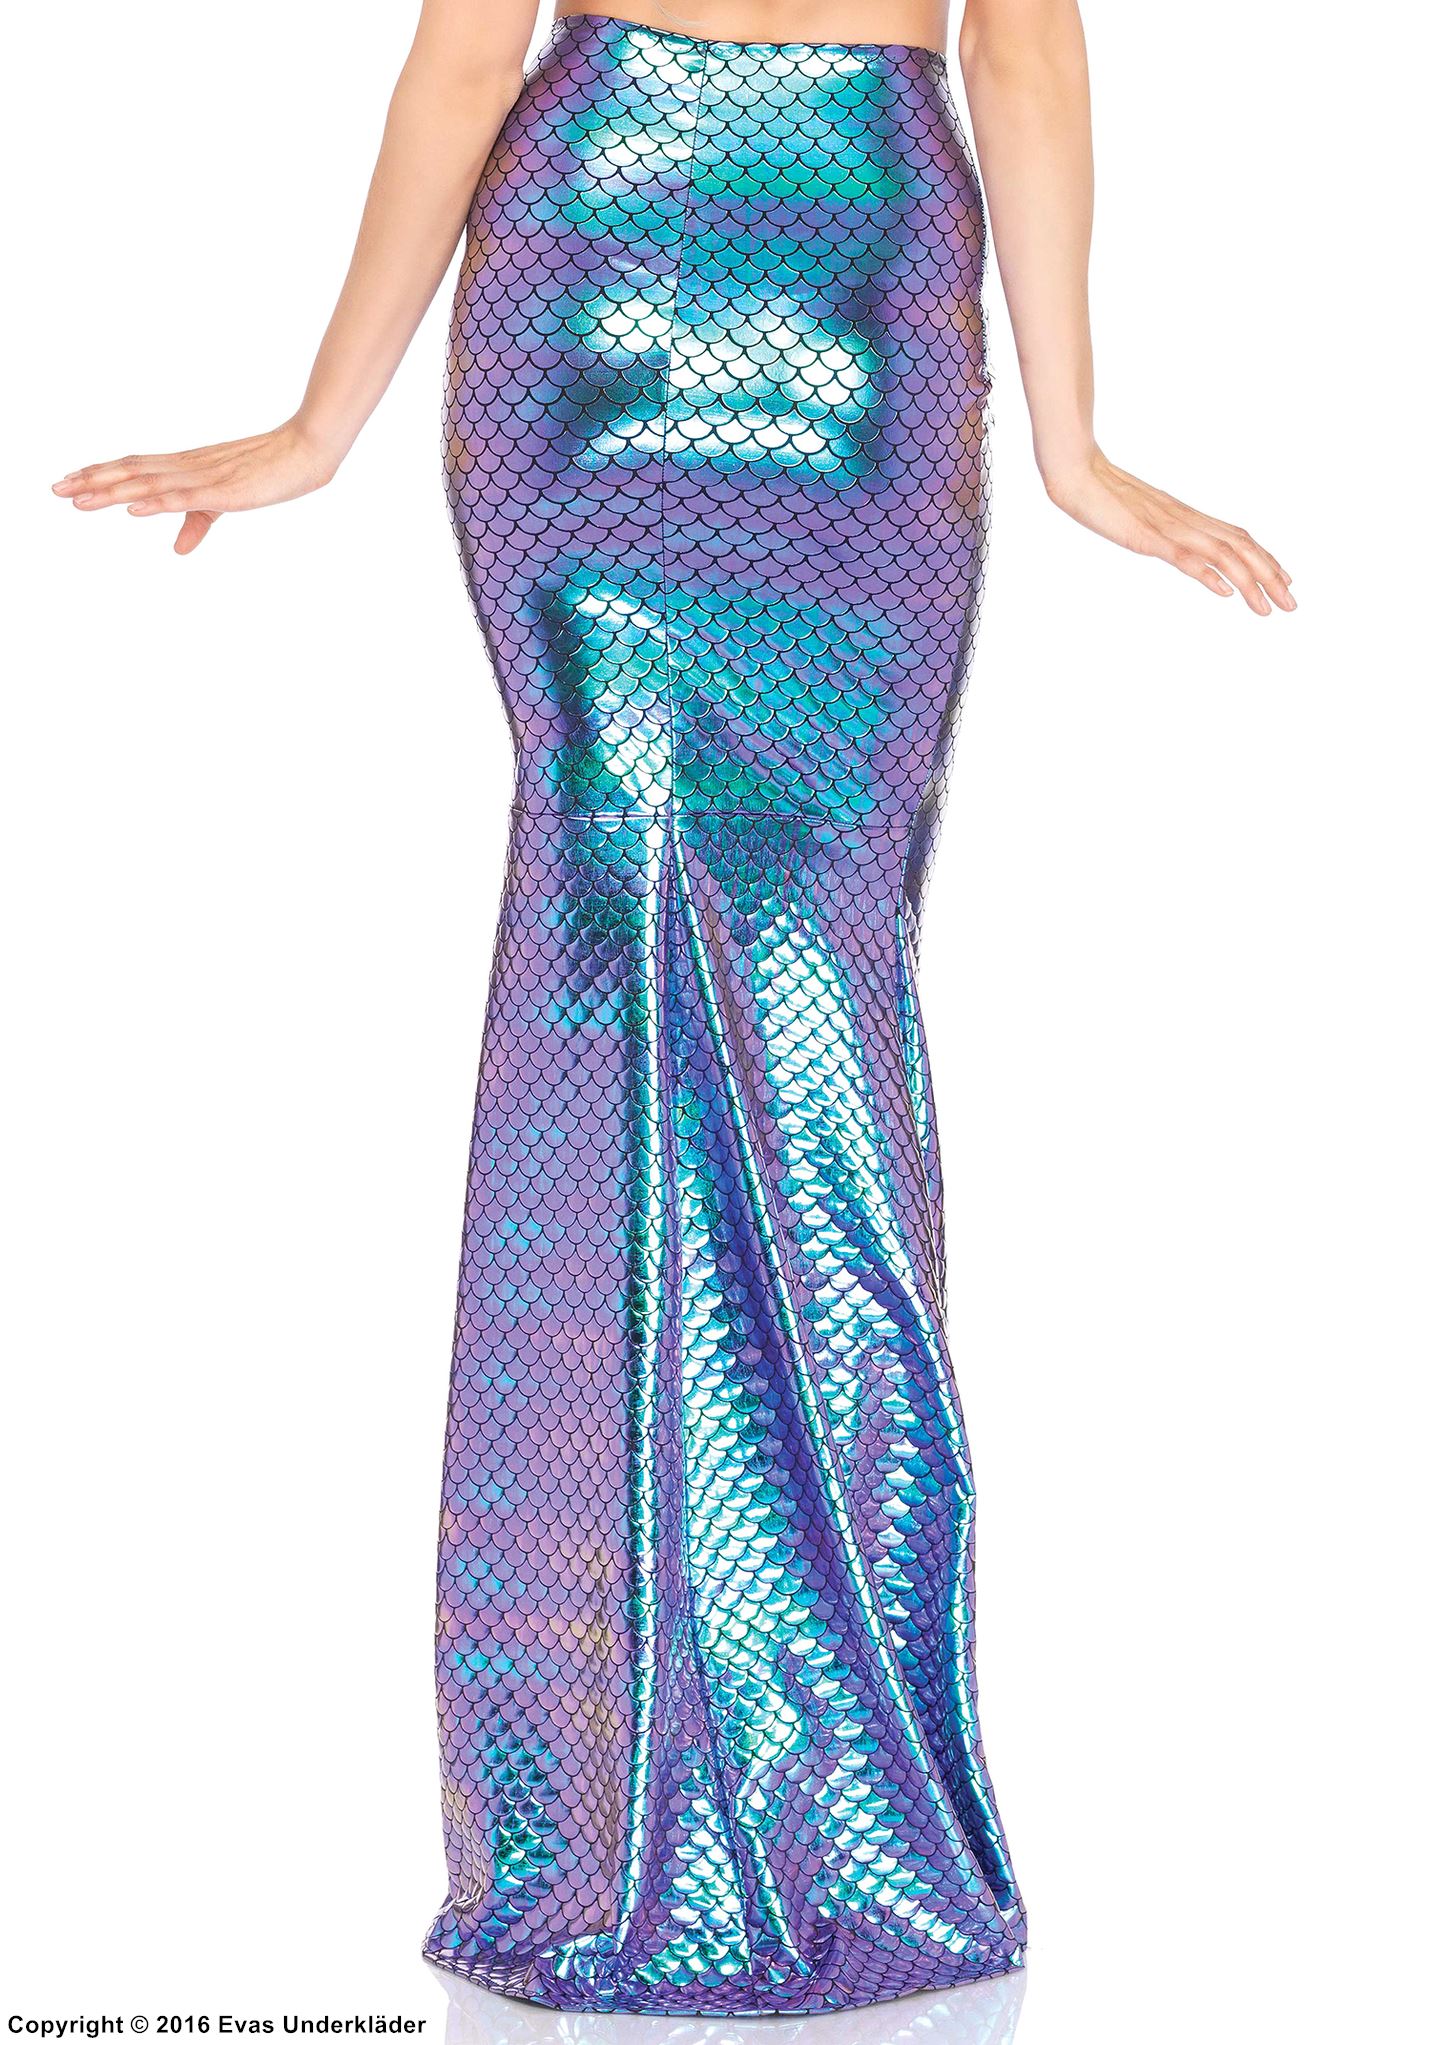 Mermaid, fishtail long skirt, iridescent fabric